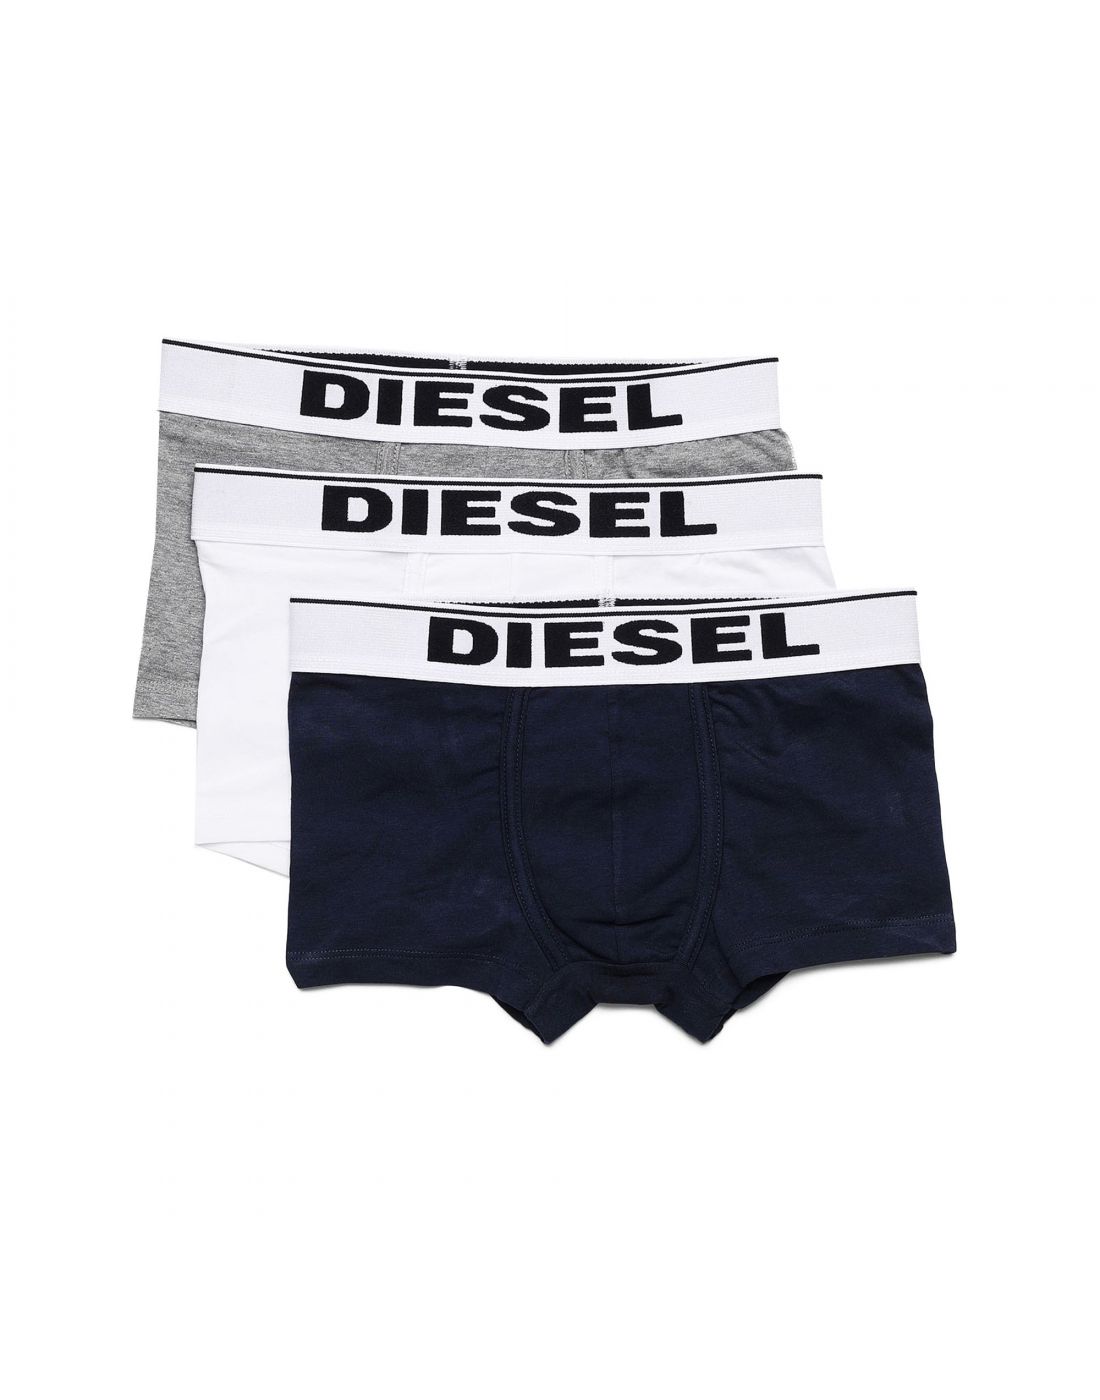 Diesel Boys 3 Pack Underwear